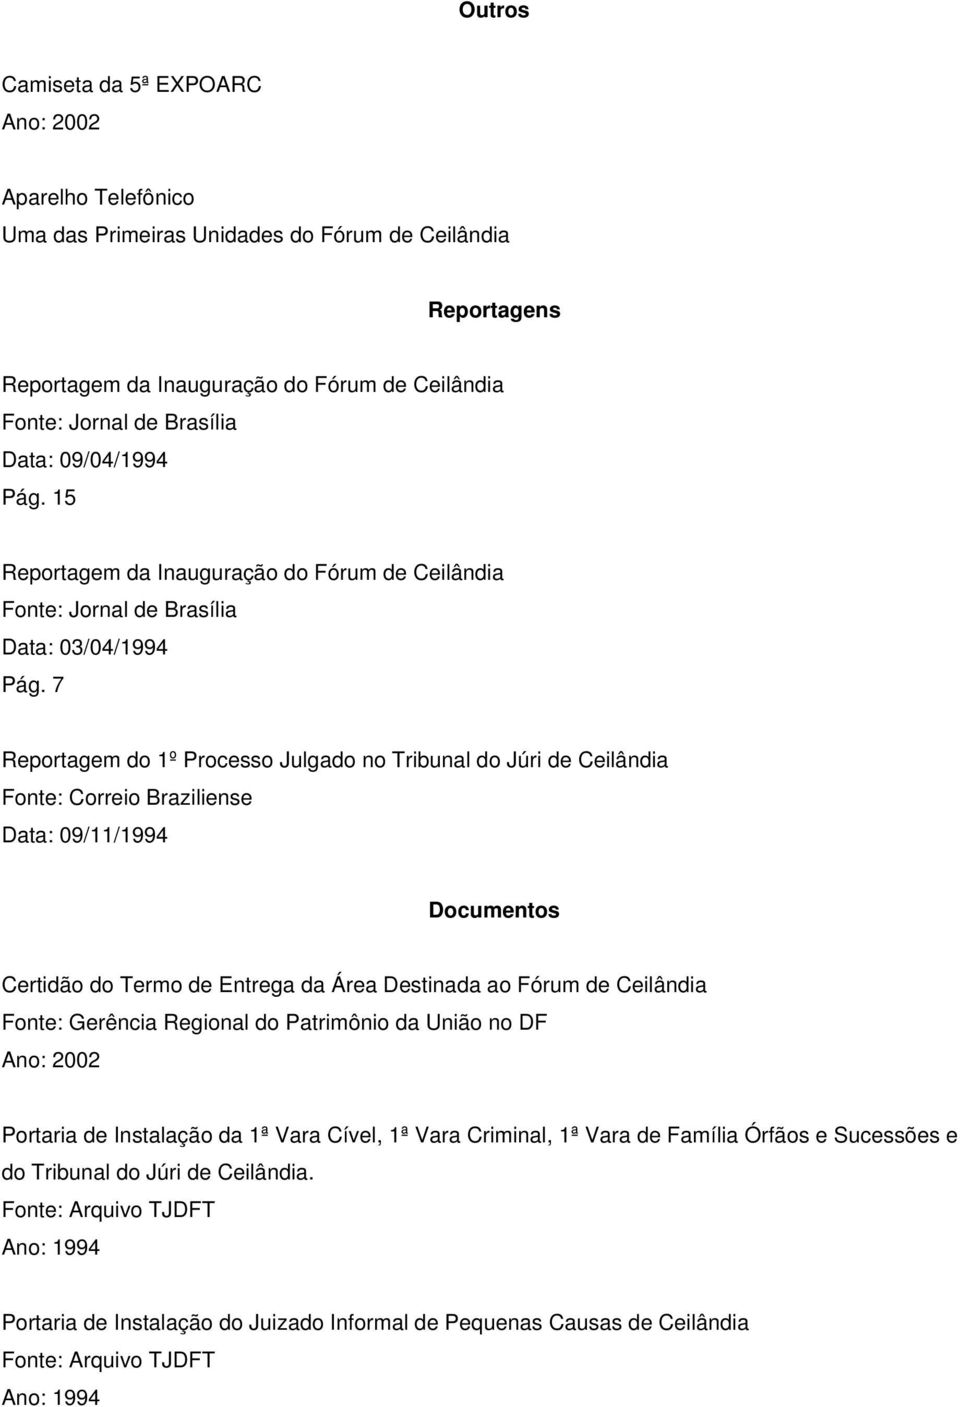 7 Reportagem do 1º Processo Julgado no Tribunal do Júri de Ceilândia Fonte: Correio Braziliense Data: 09/11/1994 Documentos Certidão do Termo de Entrega da Área Destinada ao Fórum de Ceilândia